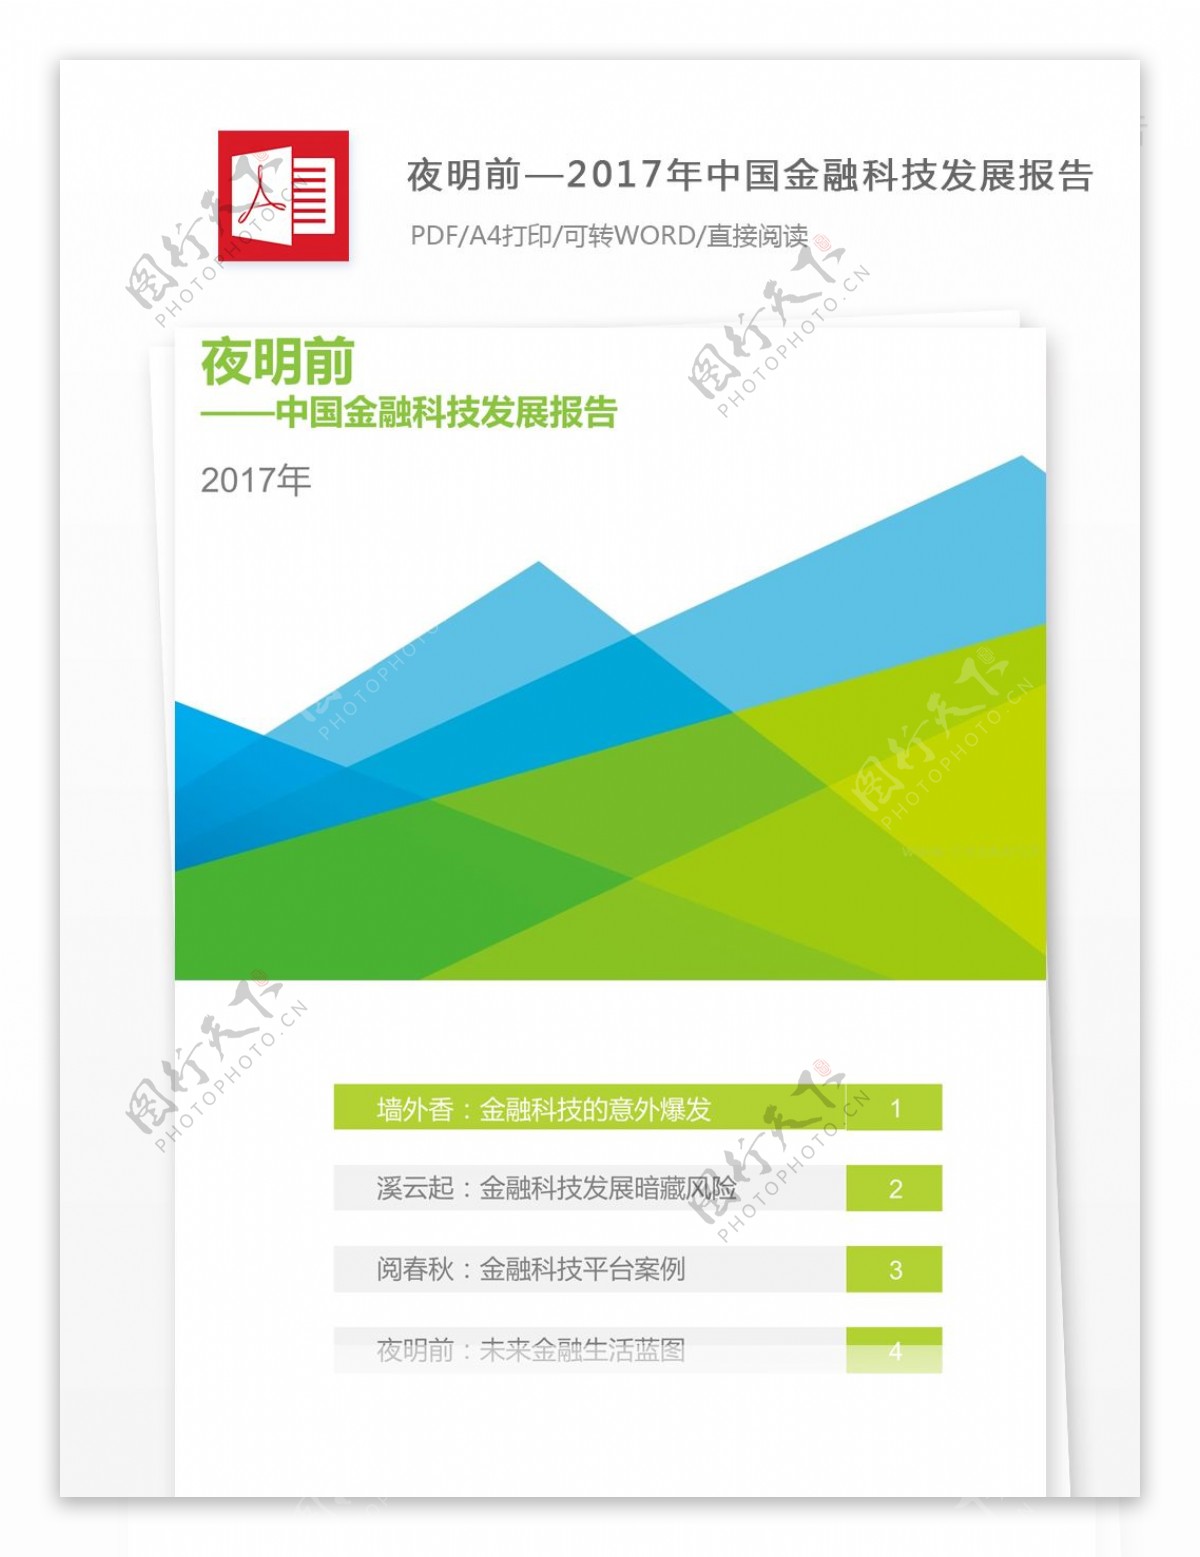 2017年中国金融科技发展报告框架